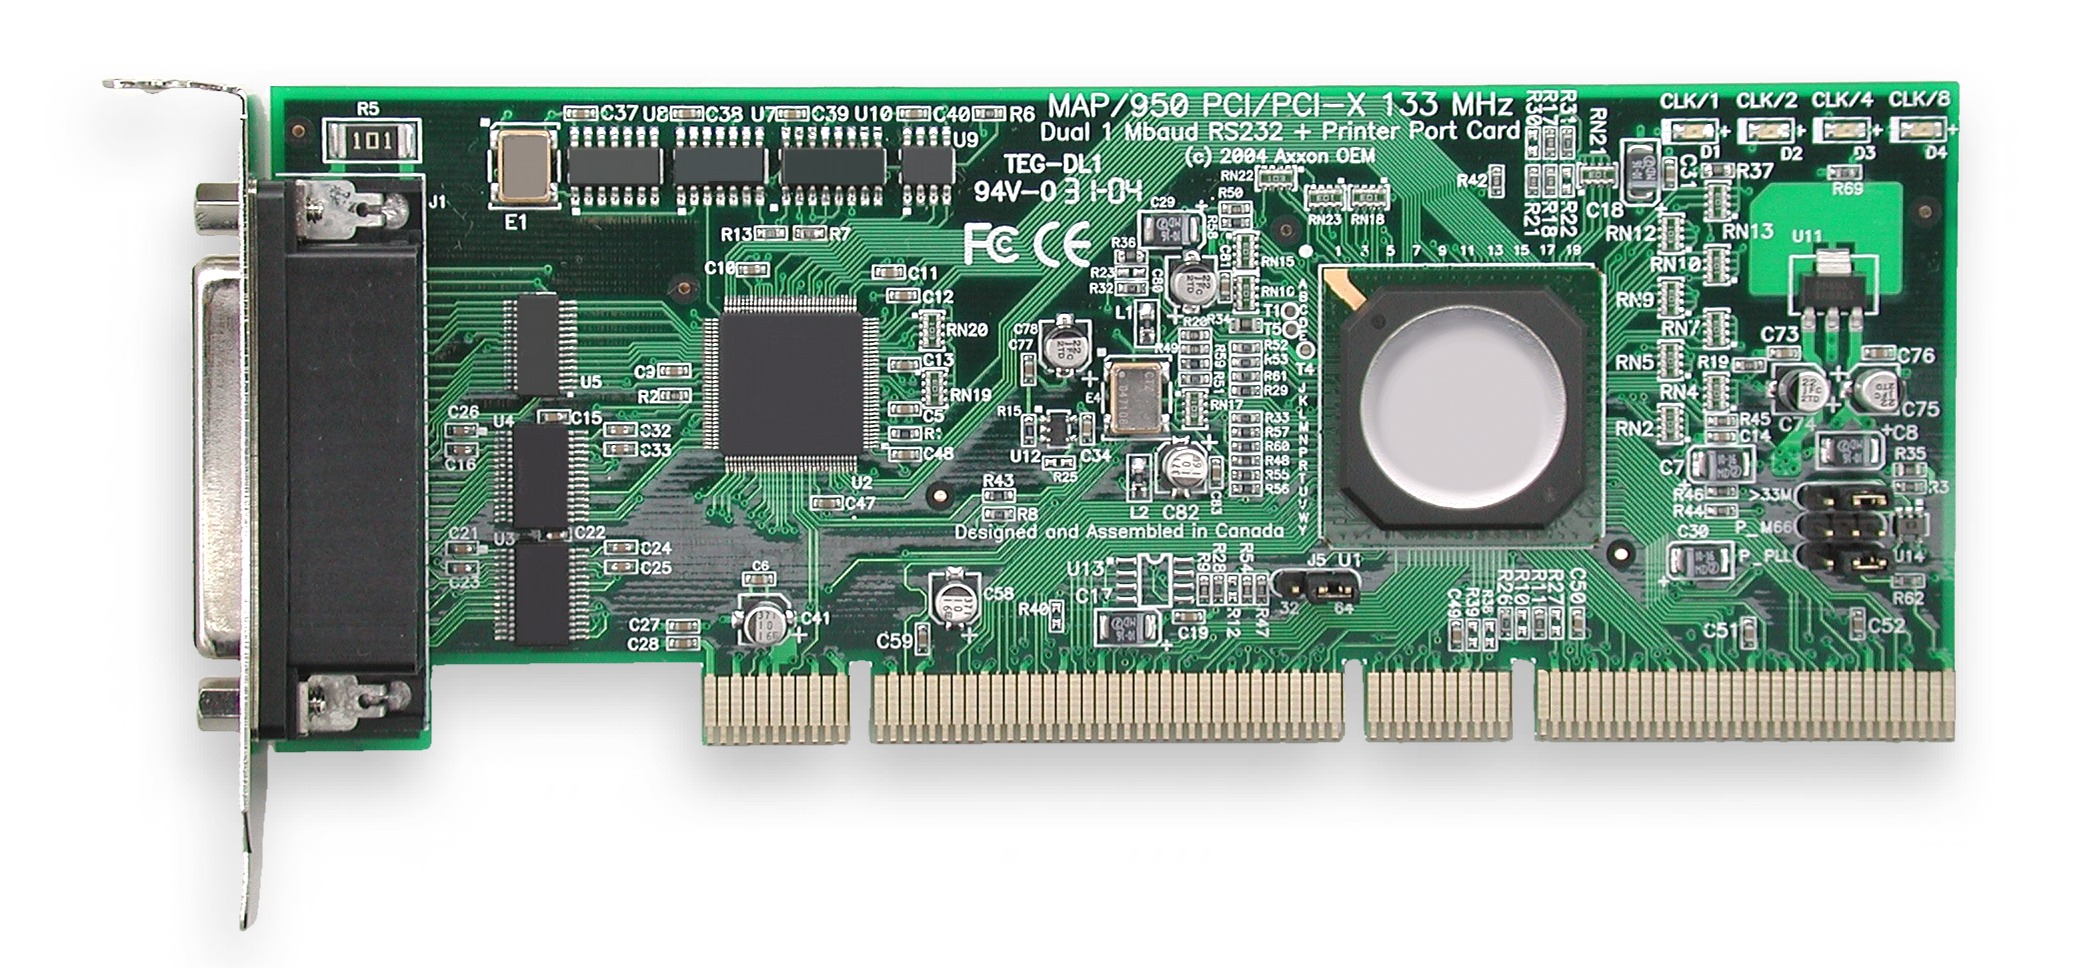 Видеокарта Matrox Millennium g550 126mhz PCI-E 32mb 333mhz 64 bit 2xdvi. Переходник PCI-X Slots 133 MHZ. PCI 64 bit. PCI x1 u2. Pci устройство это